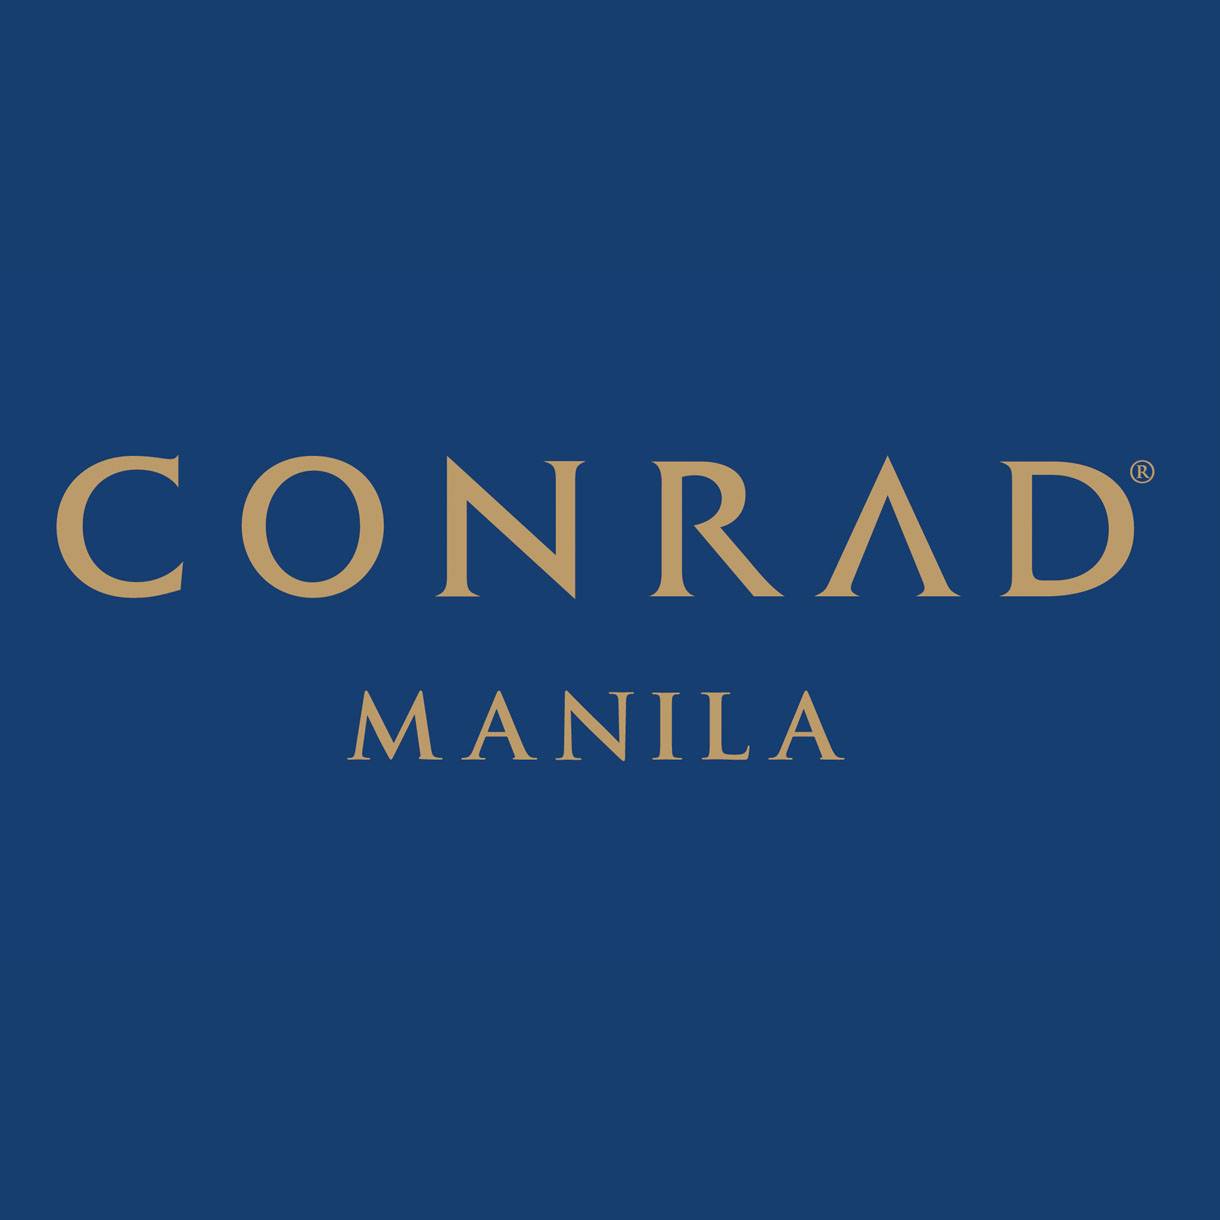 Conrad Manila